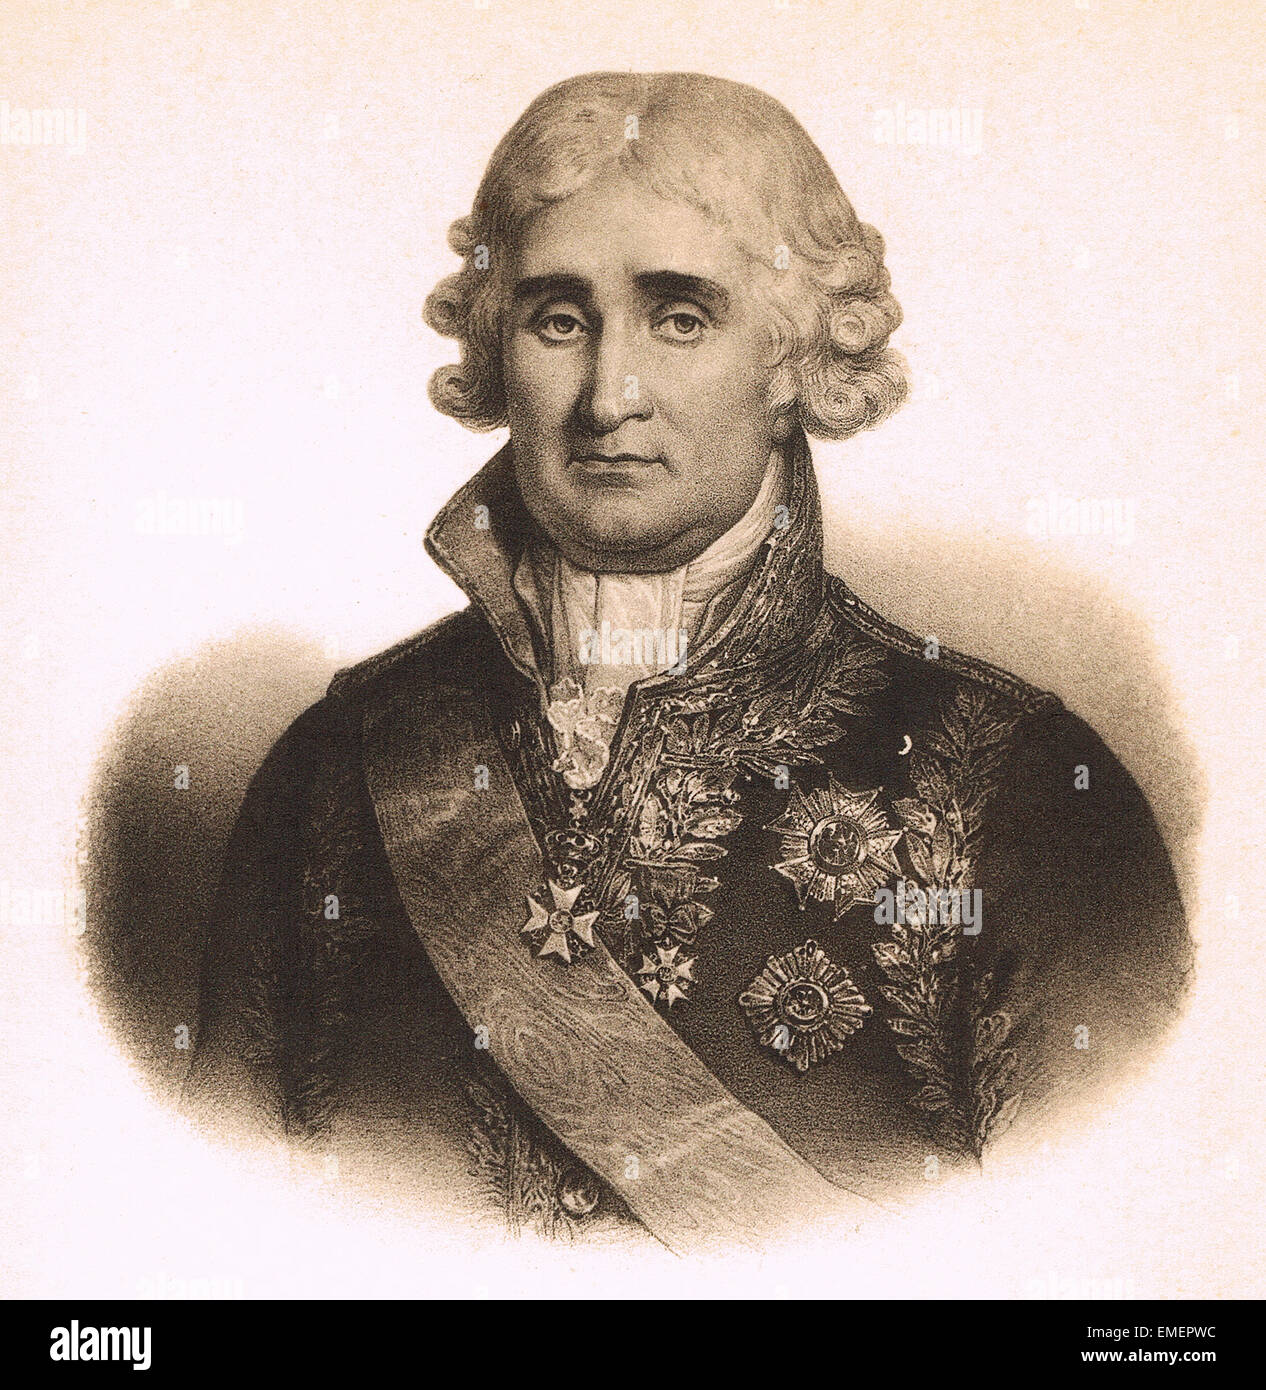 Jean-Jacques-Régis de Cambacérès, duc de Parme (au plus tard le 1er duc de Cambacérès) (1753 - 1824), avocat et homme d'État français Banque D'Images